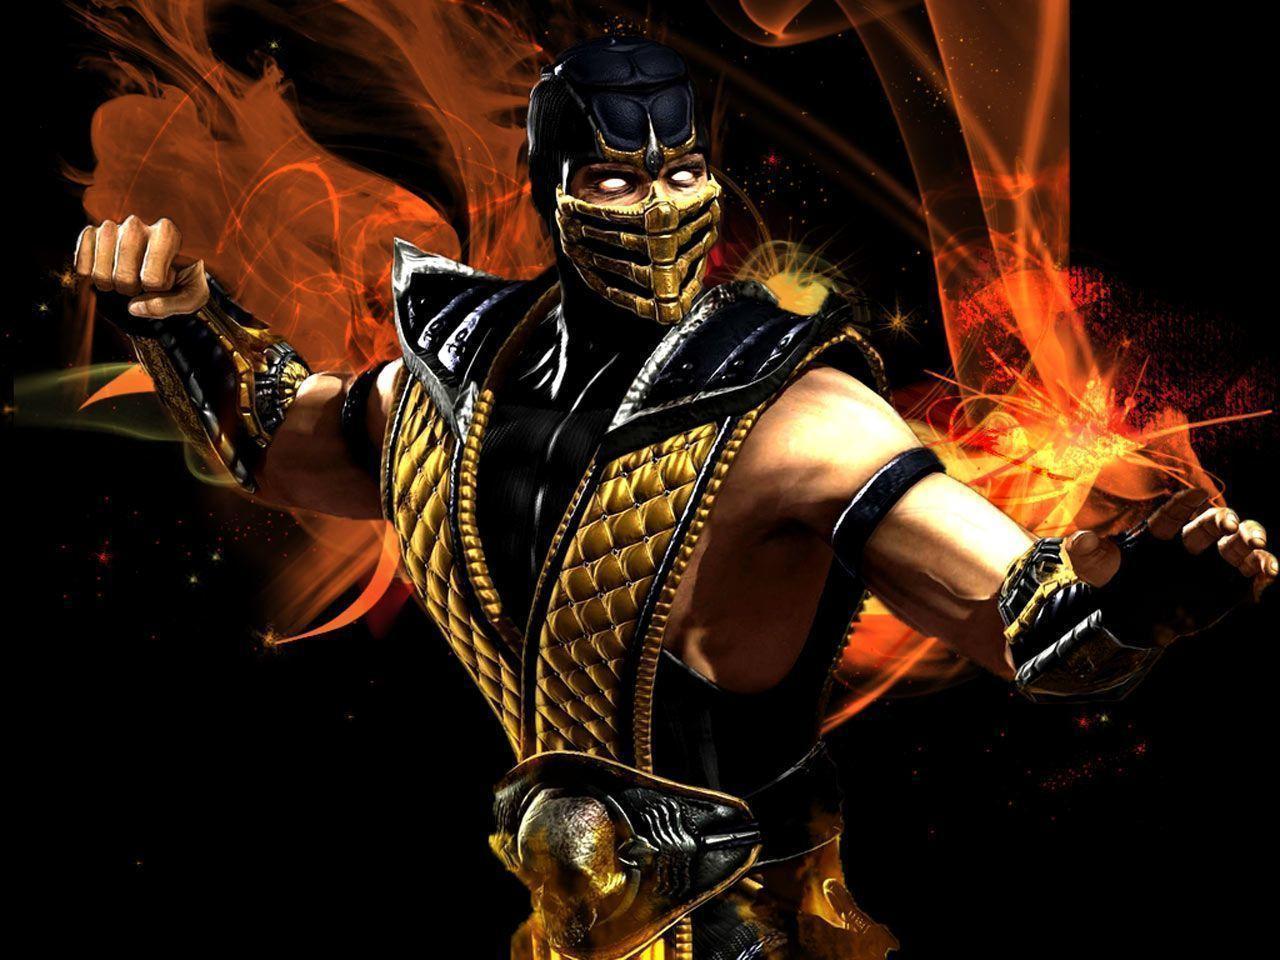 Fondos de pantalla de Mortal Kombat. Wallpaper de Mortal Kombat